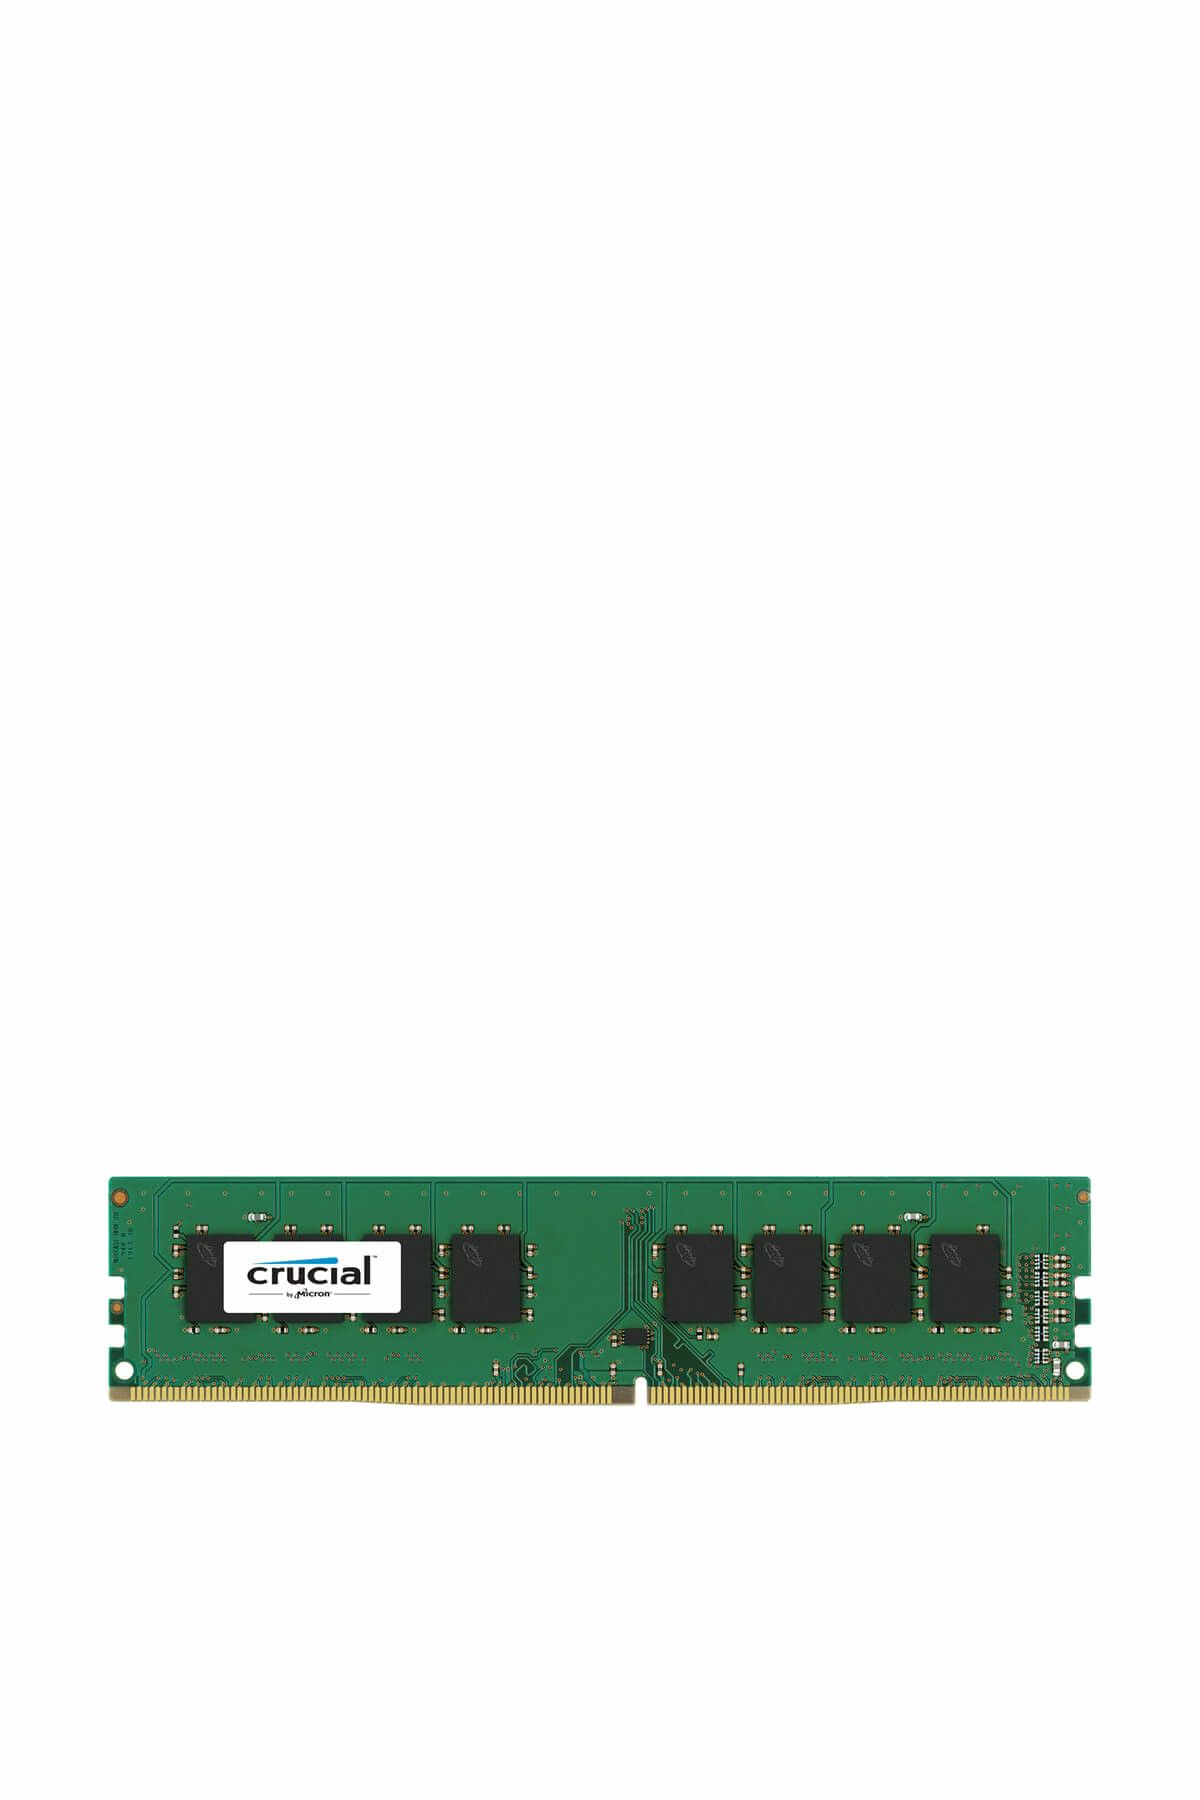 Crucial 8GB DDR4 2400MHz CRUCİAL BELLEK CT8G4DFS824A PC